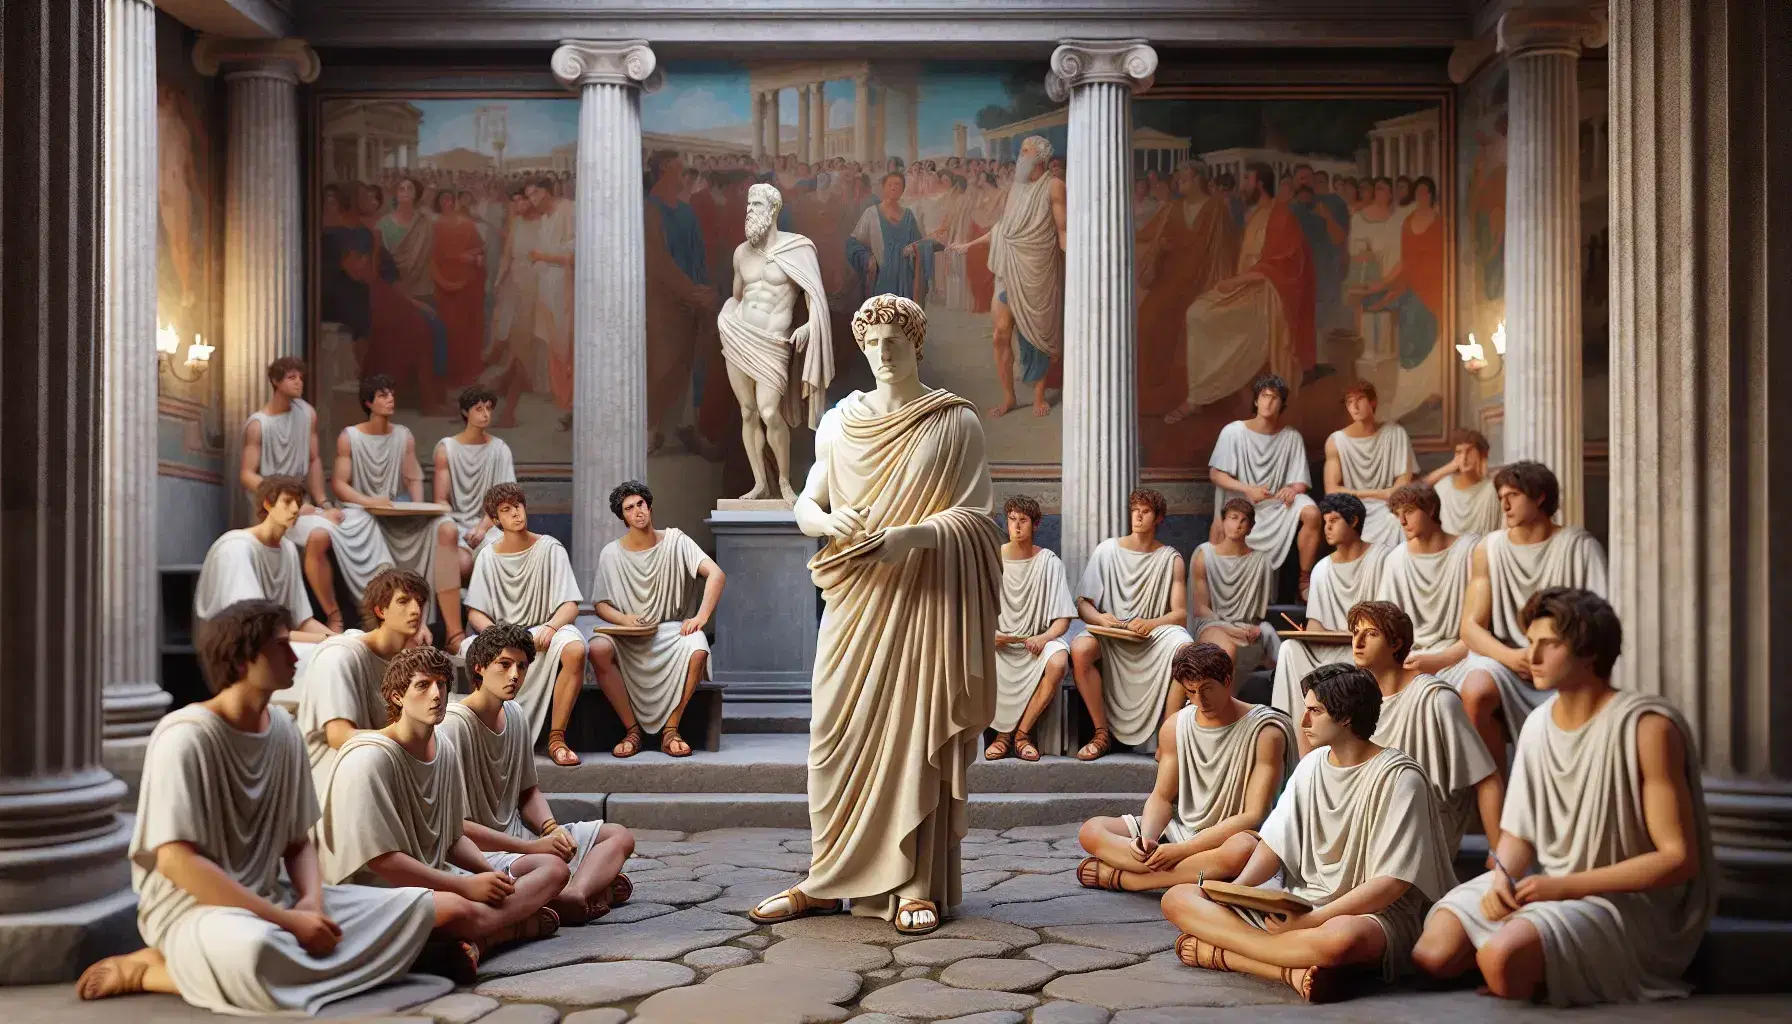 Escena de aula romana antigua con un hombre en toga enseñando a jóvenes sentados en semicírculo, estatuas y frescos en la pared bajo luz natural.